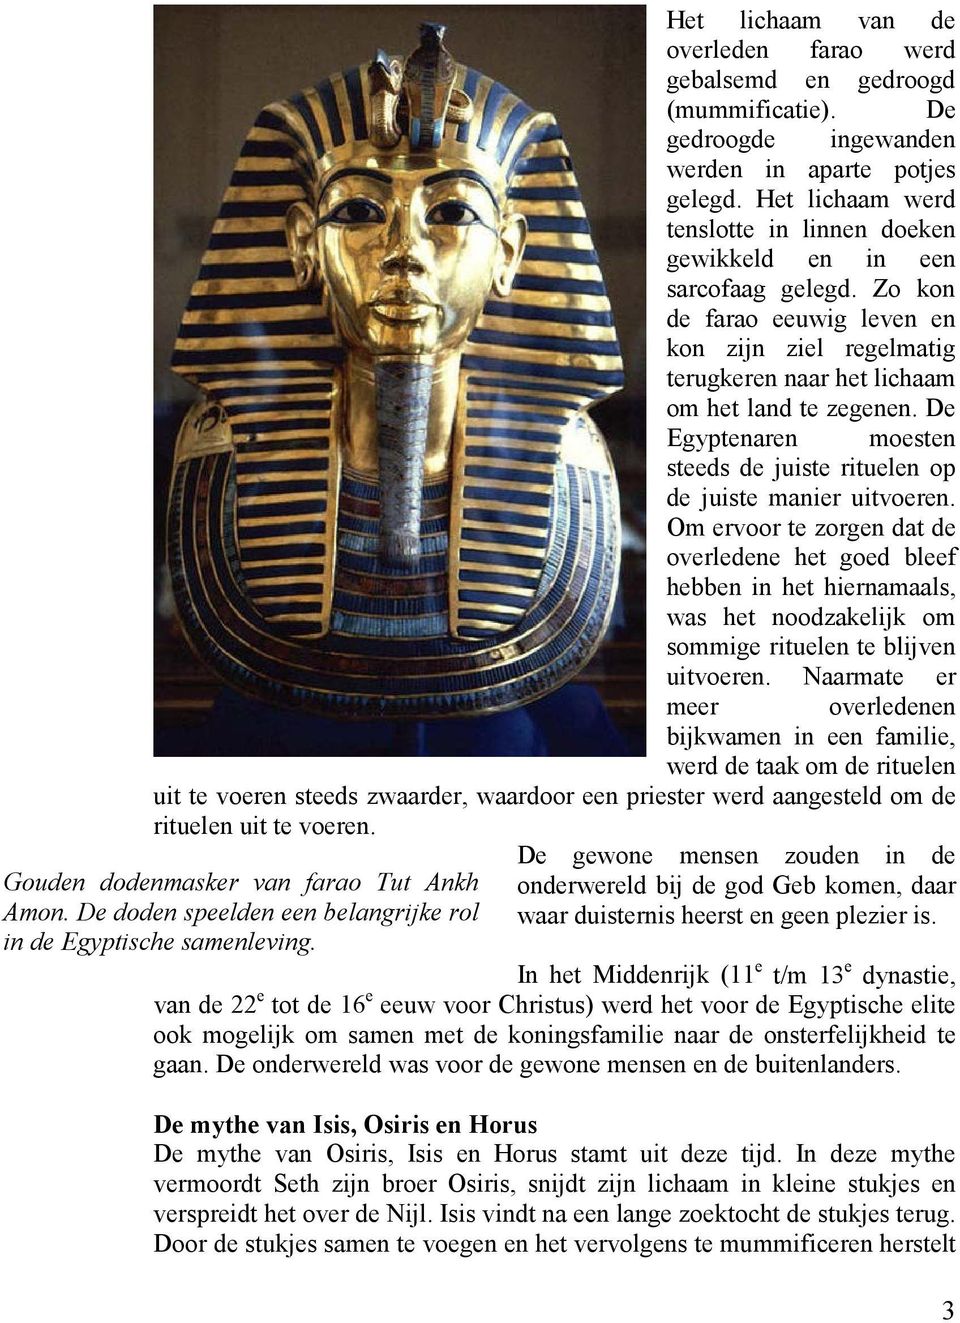 De Egyptenaren moesten steeds de juiste rituelen op de juiste manier uitvoeren.